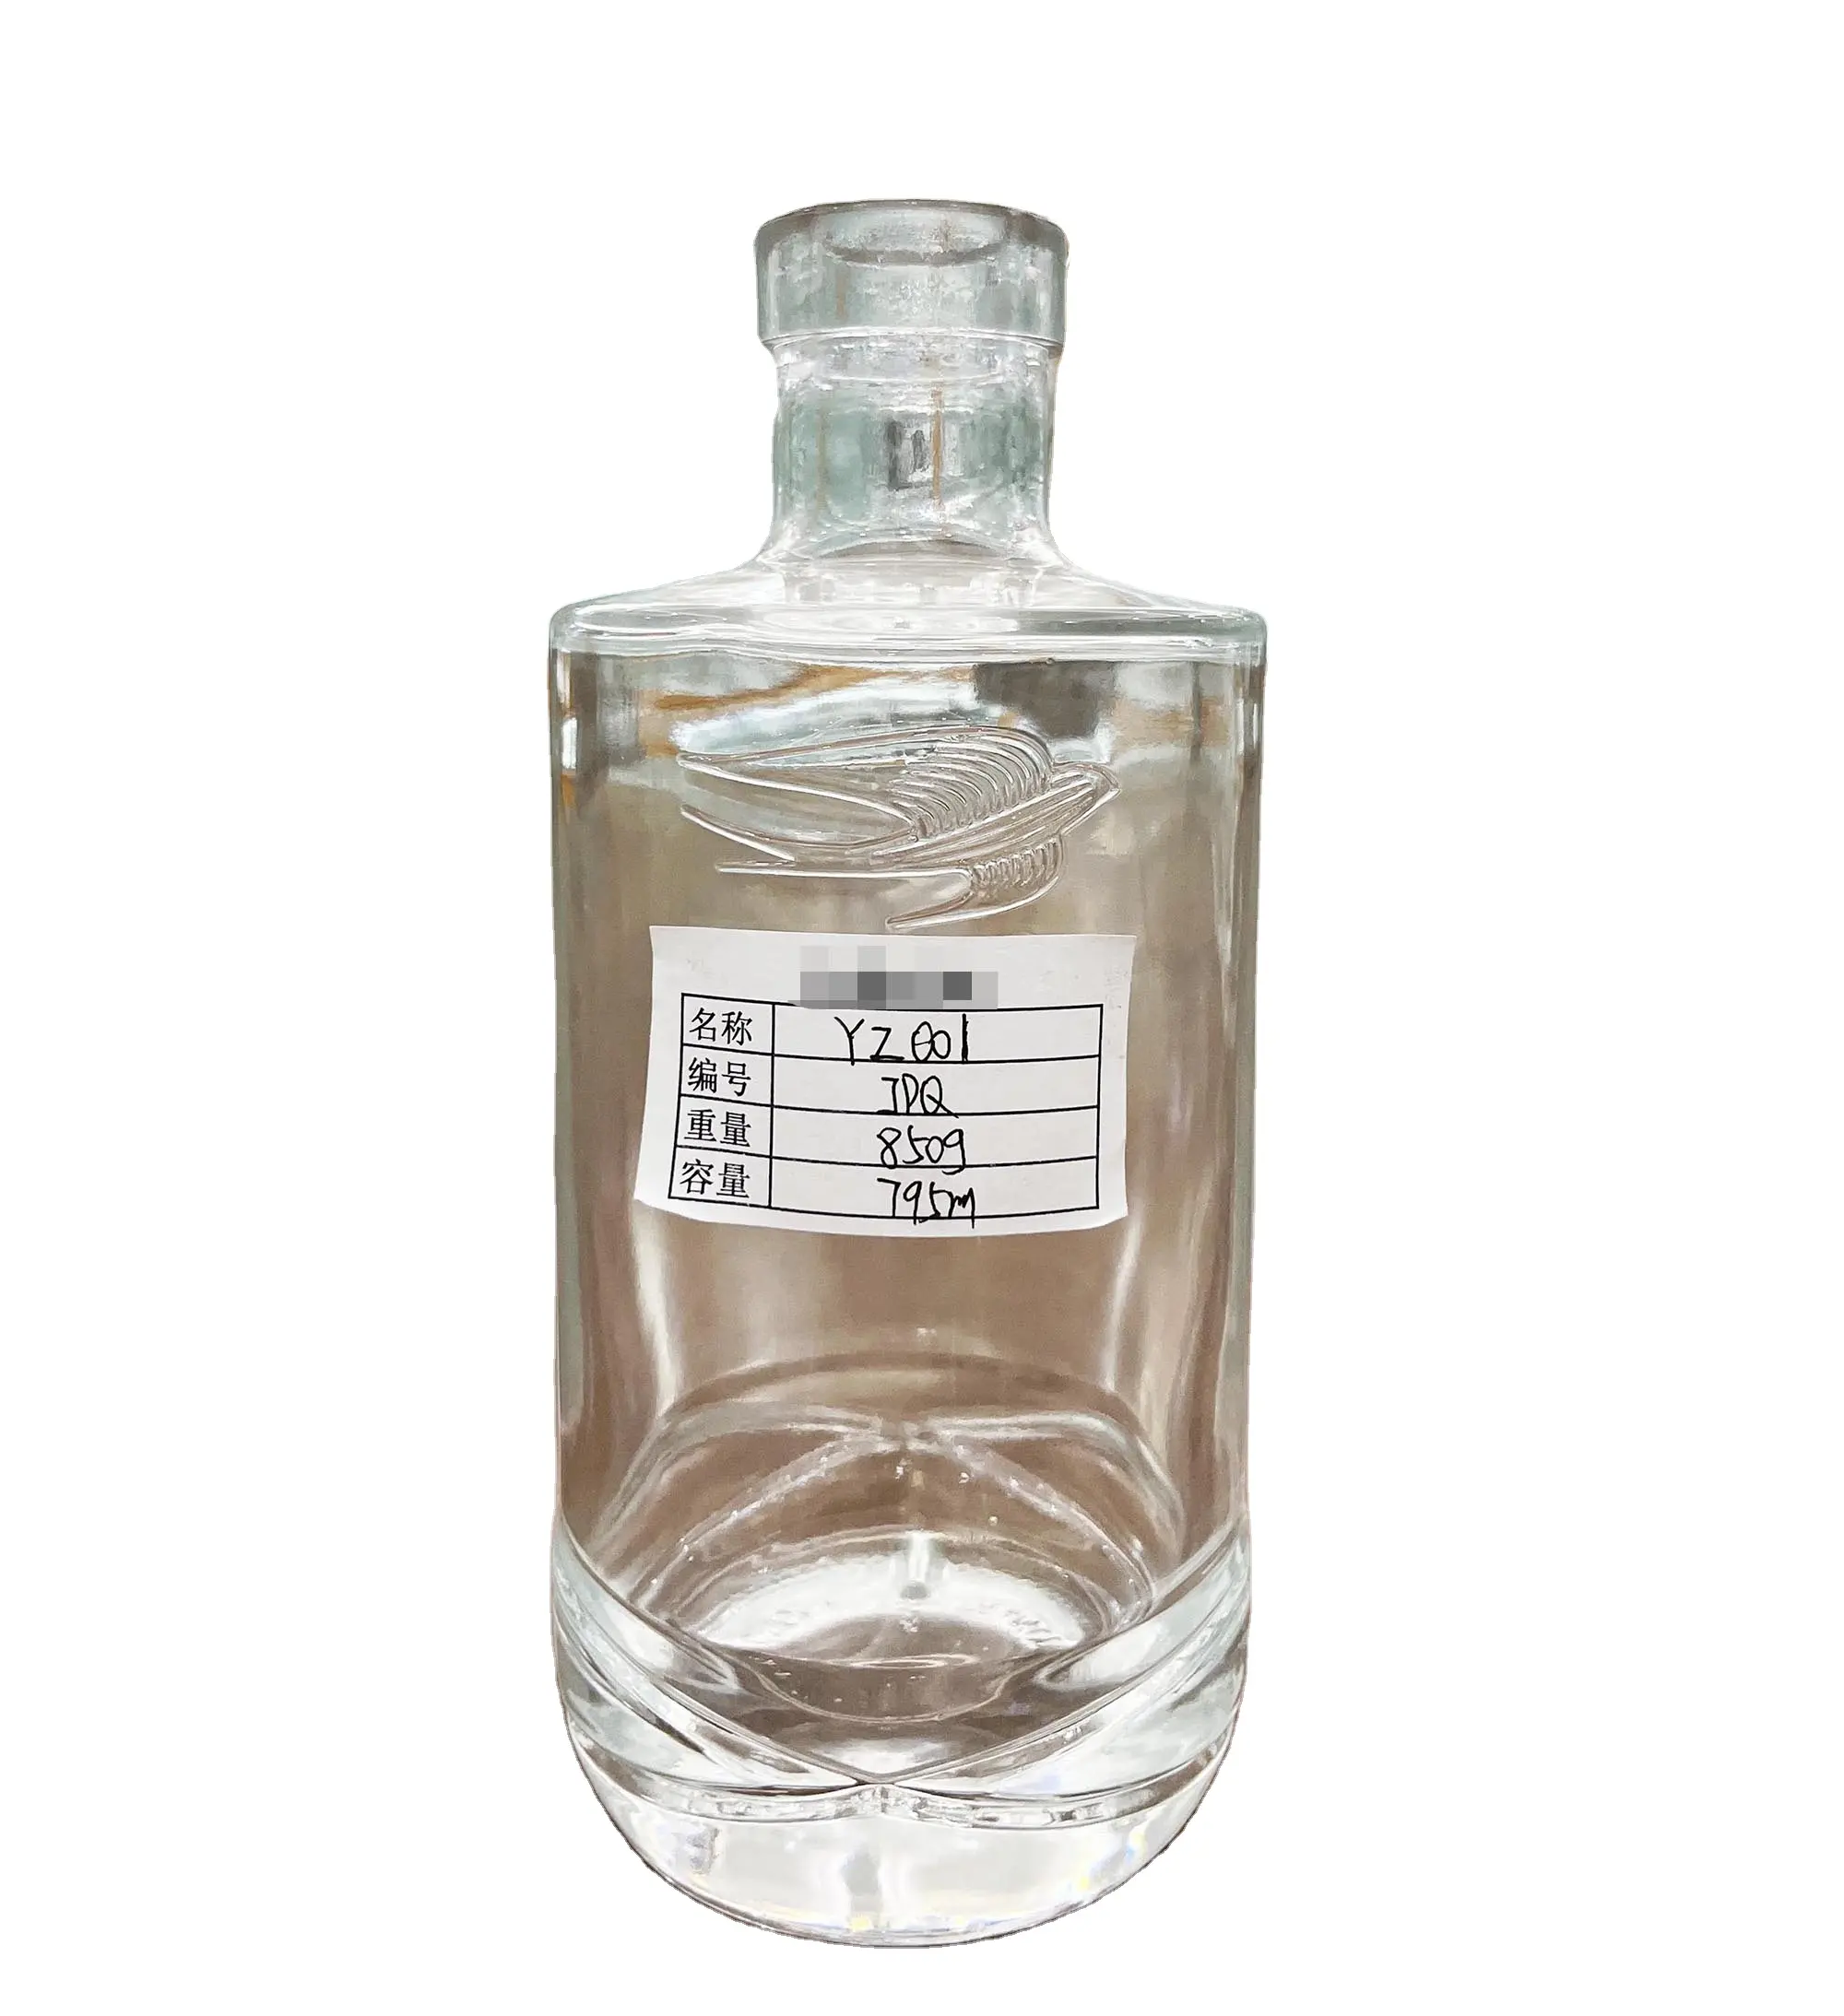 750 ml Super Flint Jersey Glas Likör Spirituosen-Flasche mit Korken